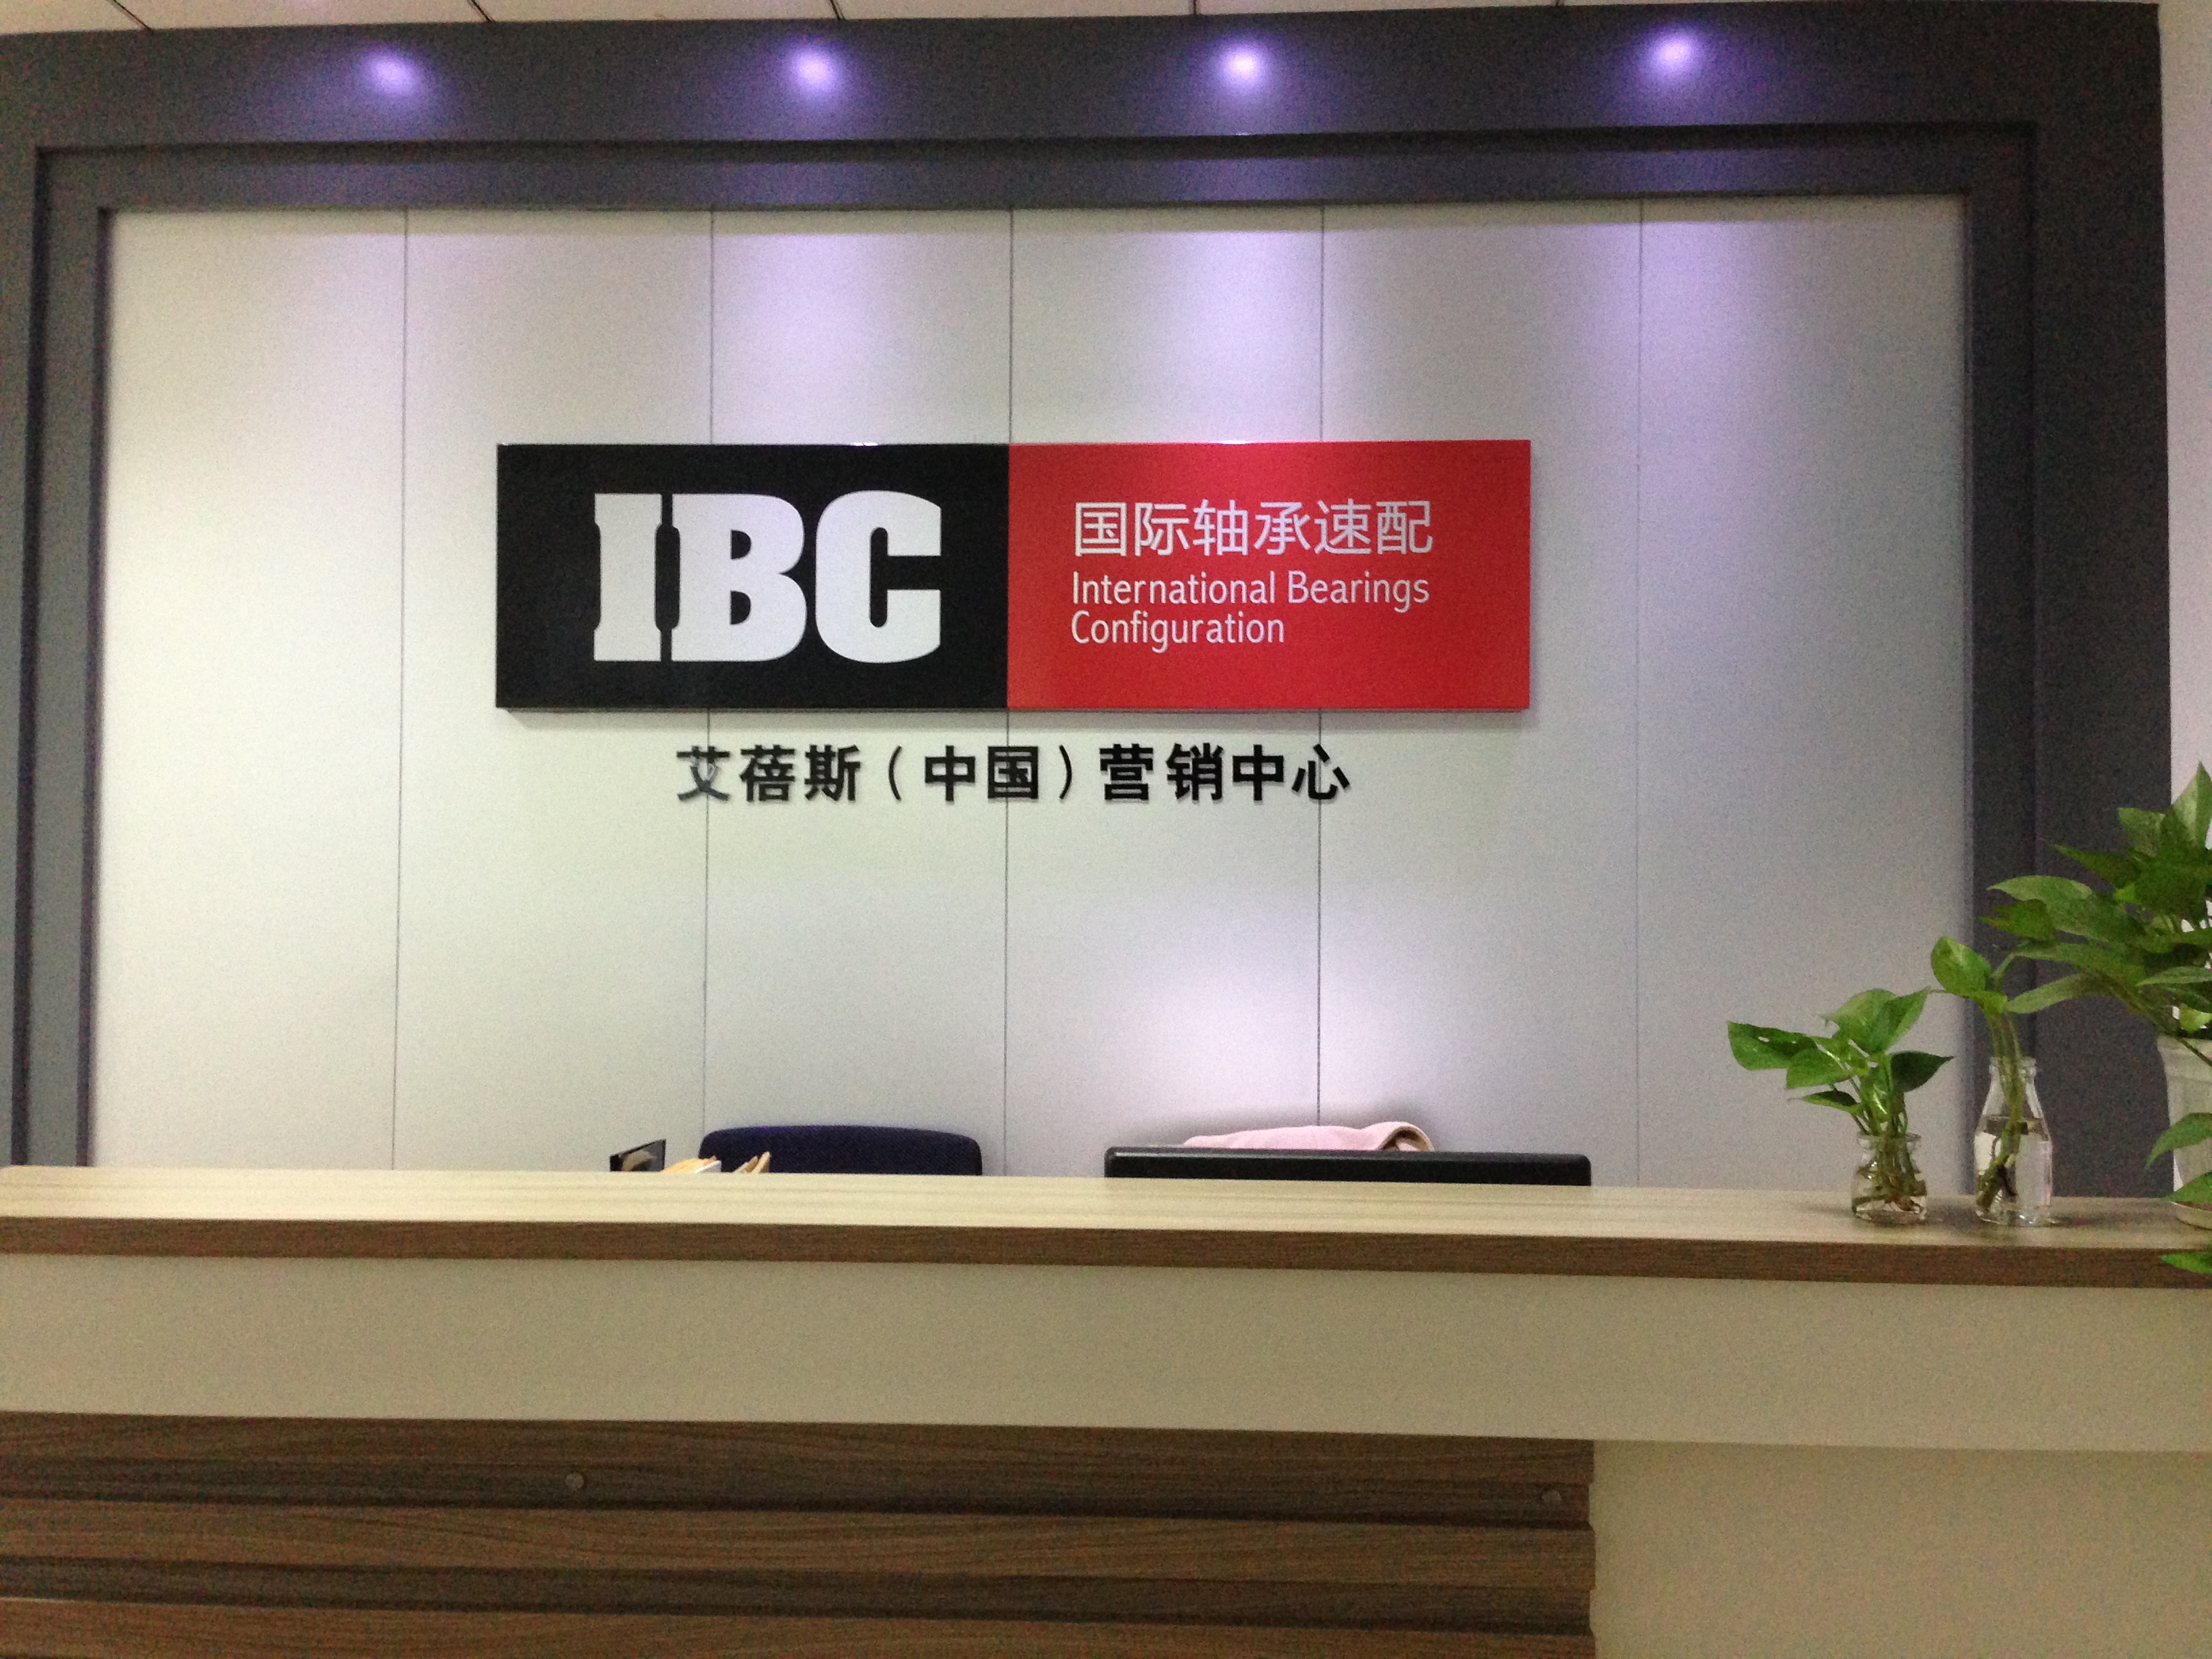 浙江神飞传动科技有限公司IBC轴承2021-2022年授权证书